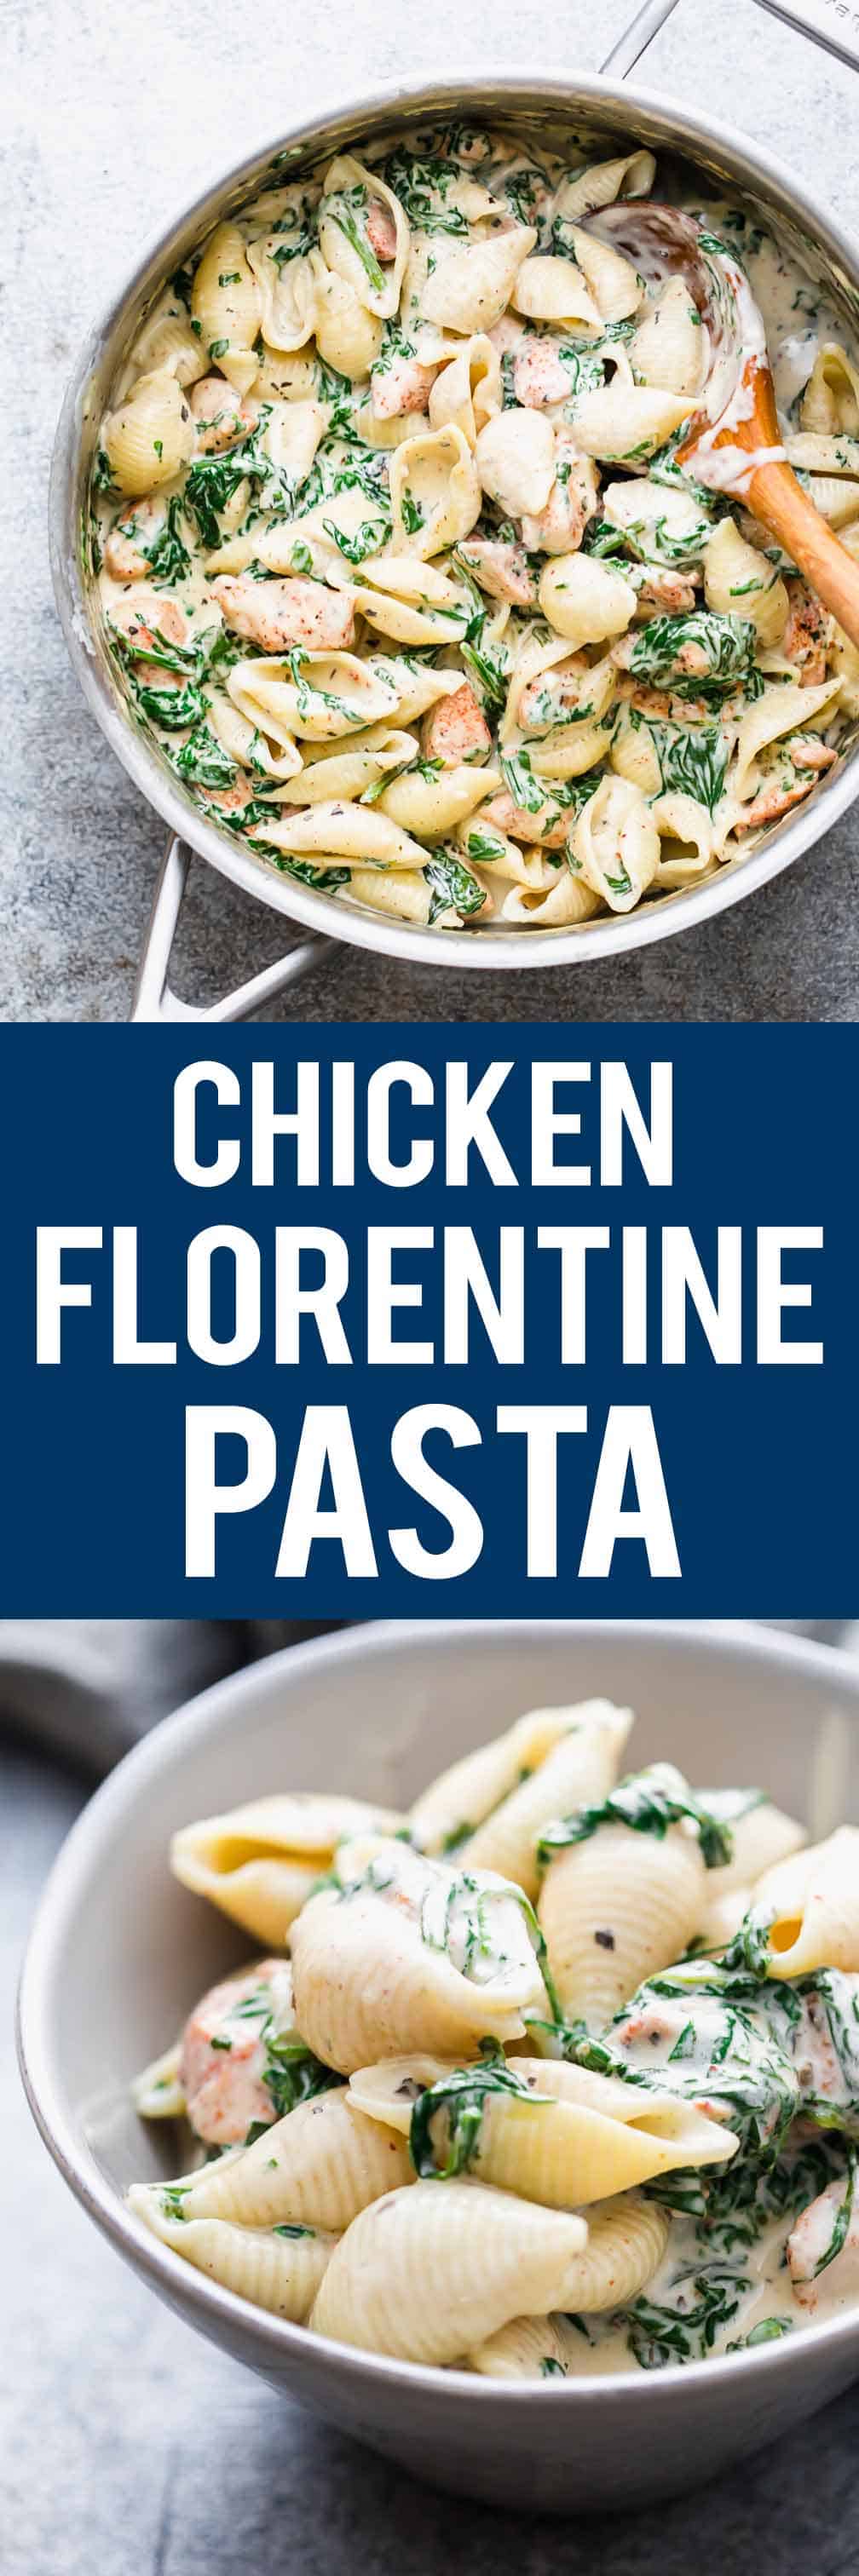 Chicken Florentine Pasta - Weeknight comfort food!